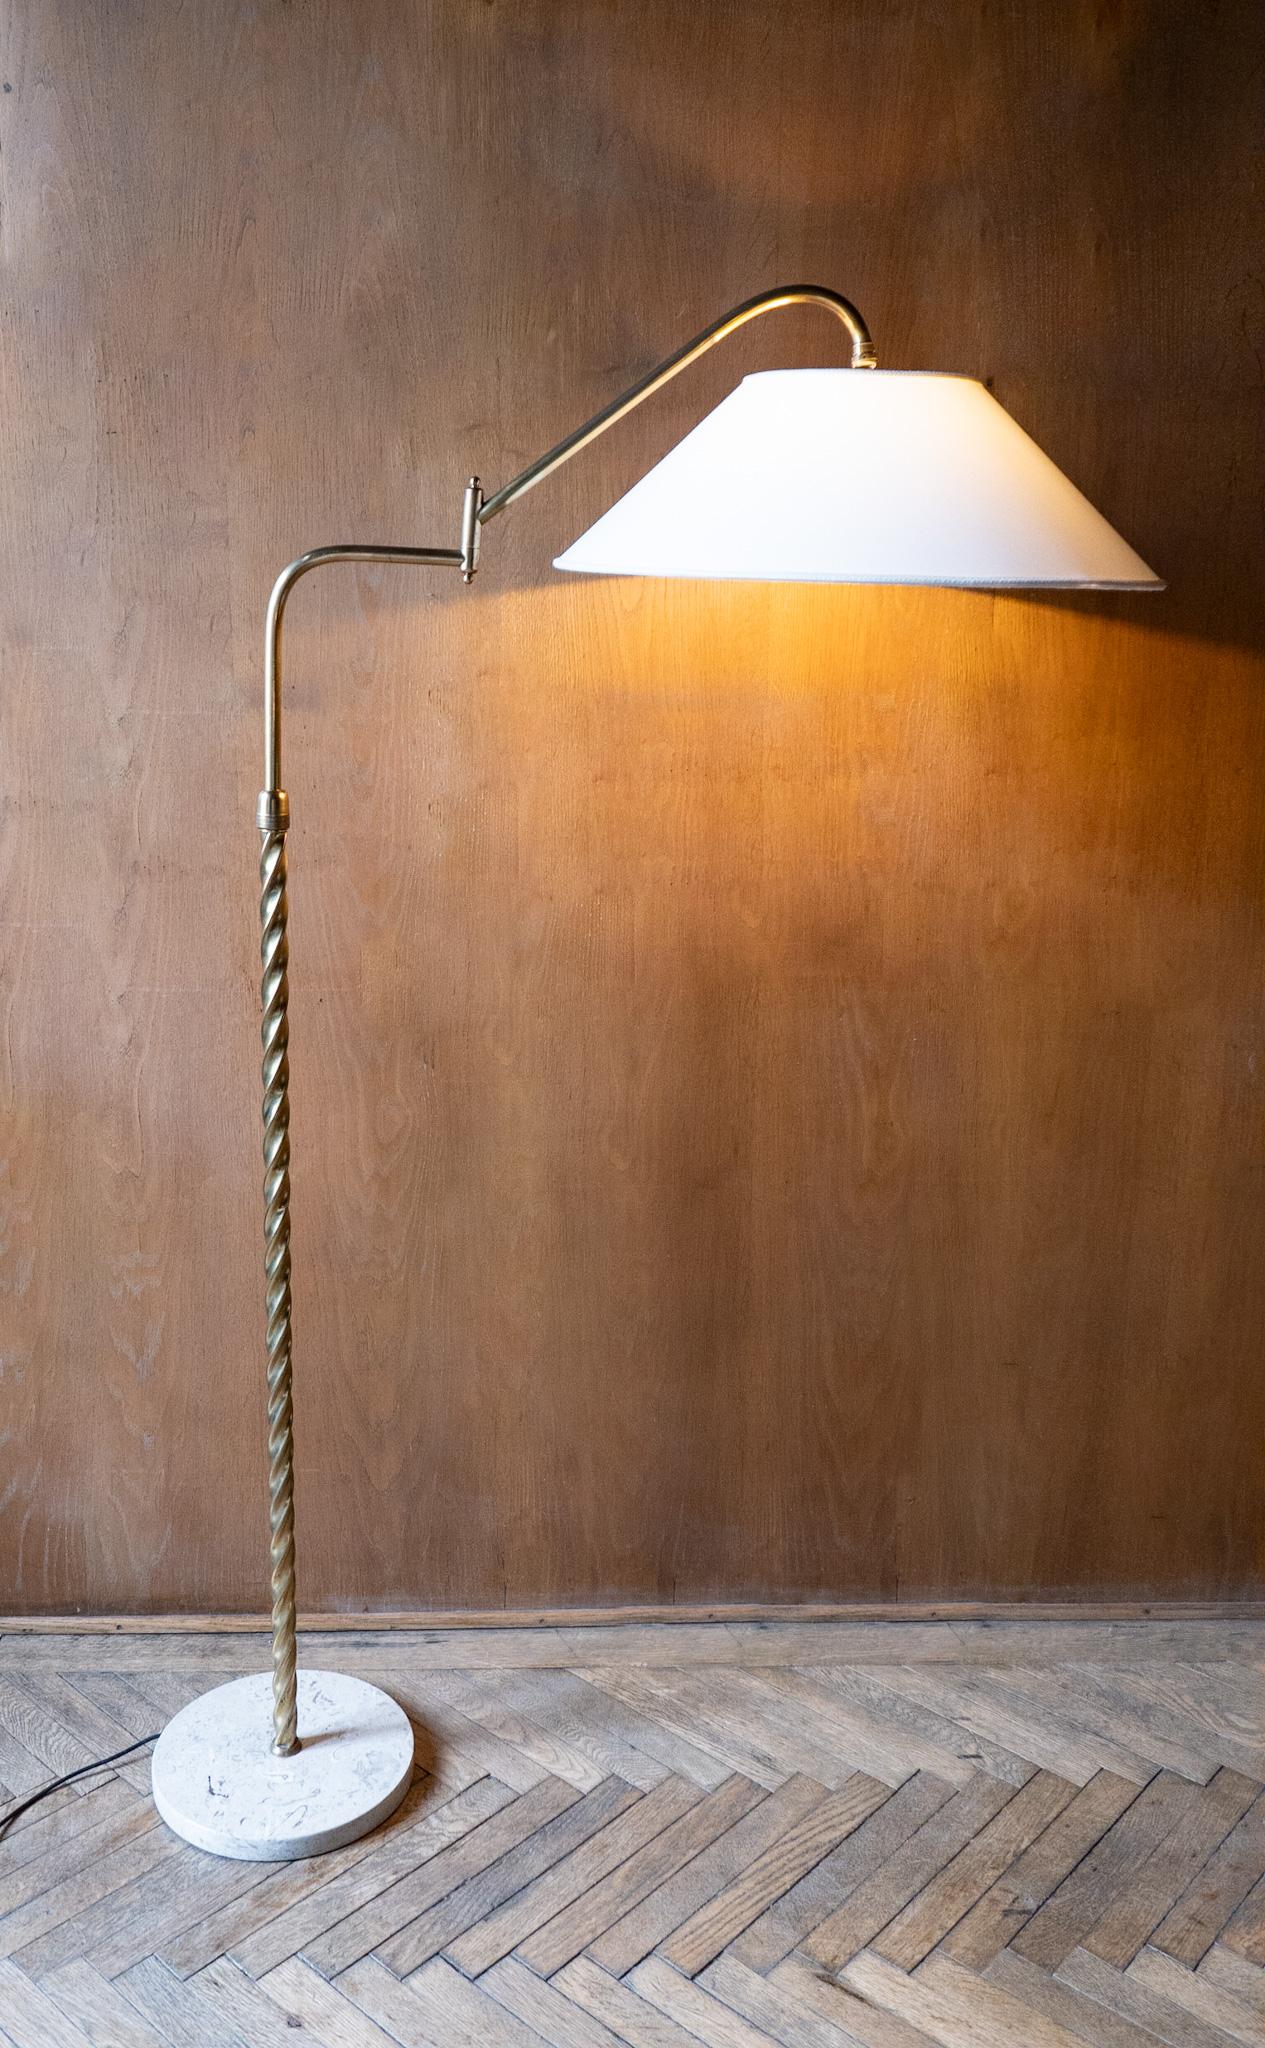 Mid Century Modern Messing Marmor Verstellbarer Arm Stehlampe, Italien 1950er Jahre.

Erleben Sie die zeitlose Anziehungskraft des italienischen Designs mit dieser exquisiten Stehlampe aus den 1950er Jahren. Mit unvergleichlicher Kunstfertigkeit